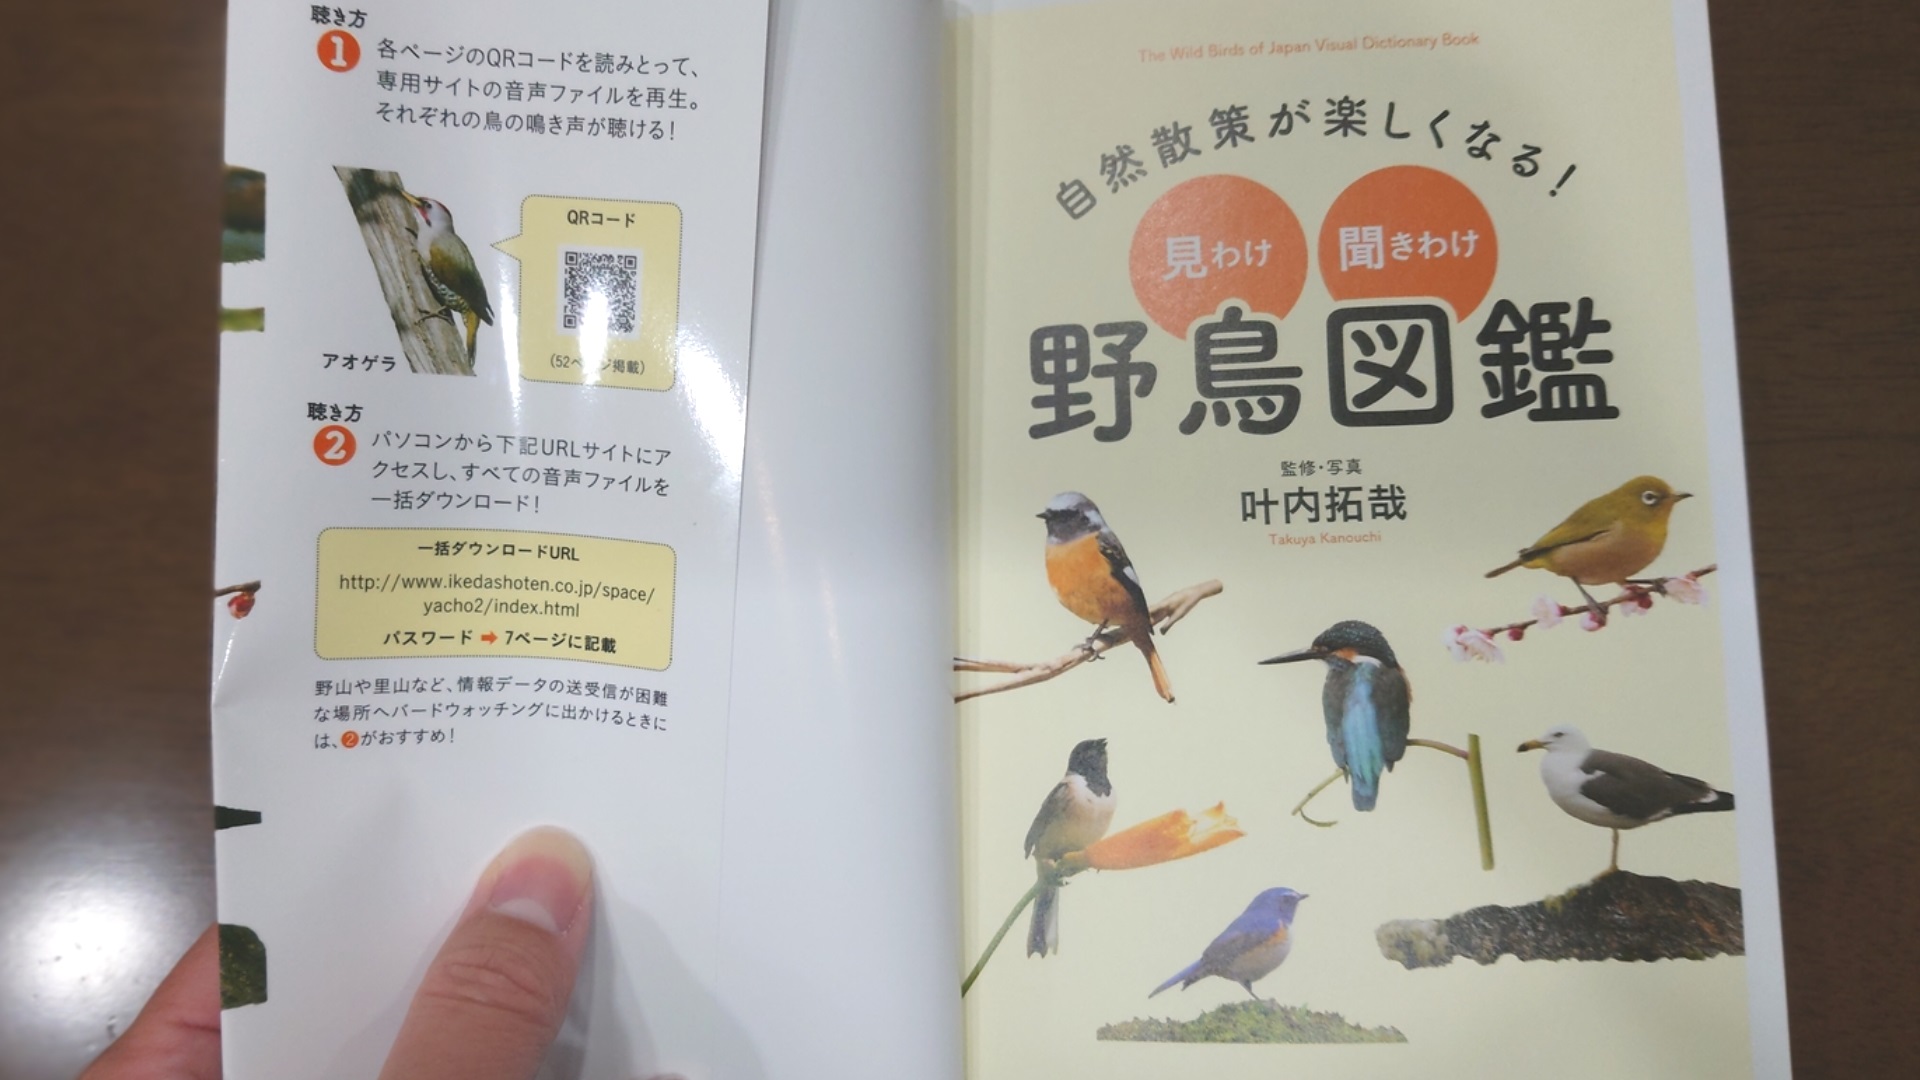 鳥の鳴き声解説がついていて、QRコードを読み込めばすぐに鳴き声を聞くことができます。
身近な野鳥も多く載っているので、子どもだけでなく大人も楽しめます！